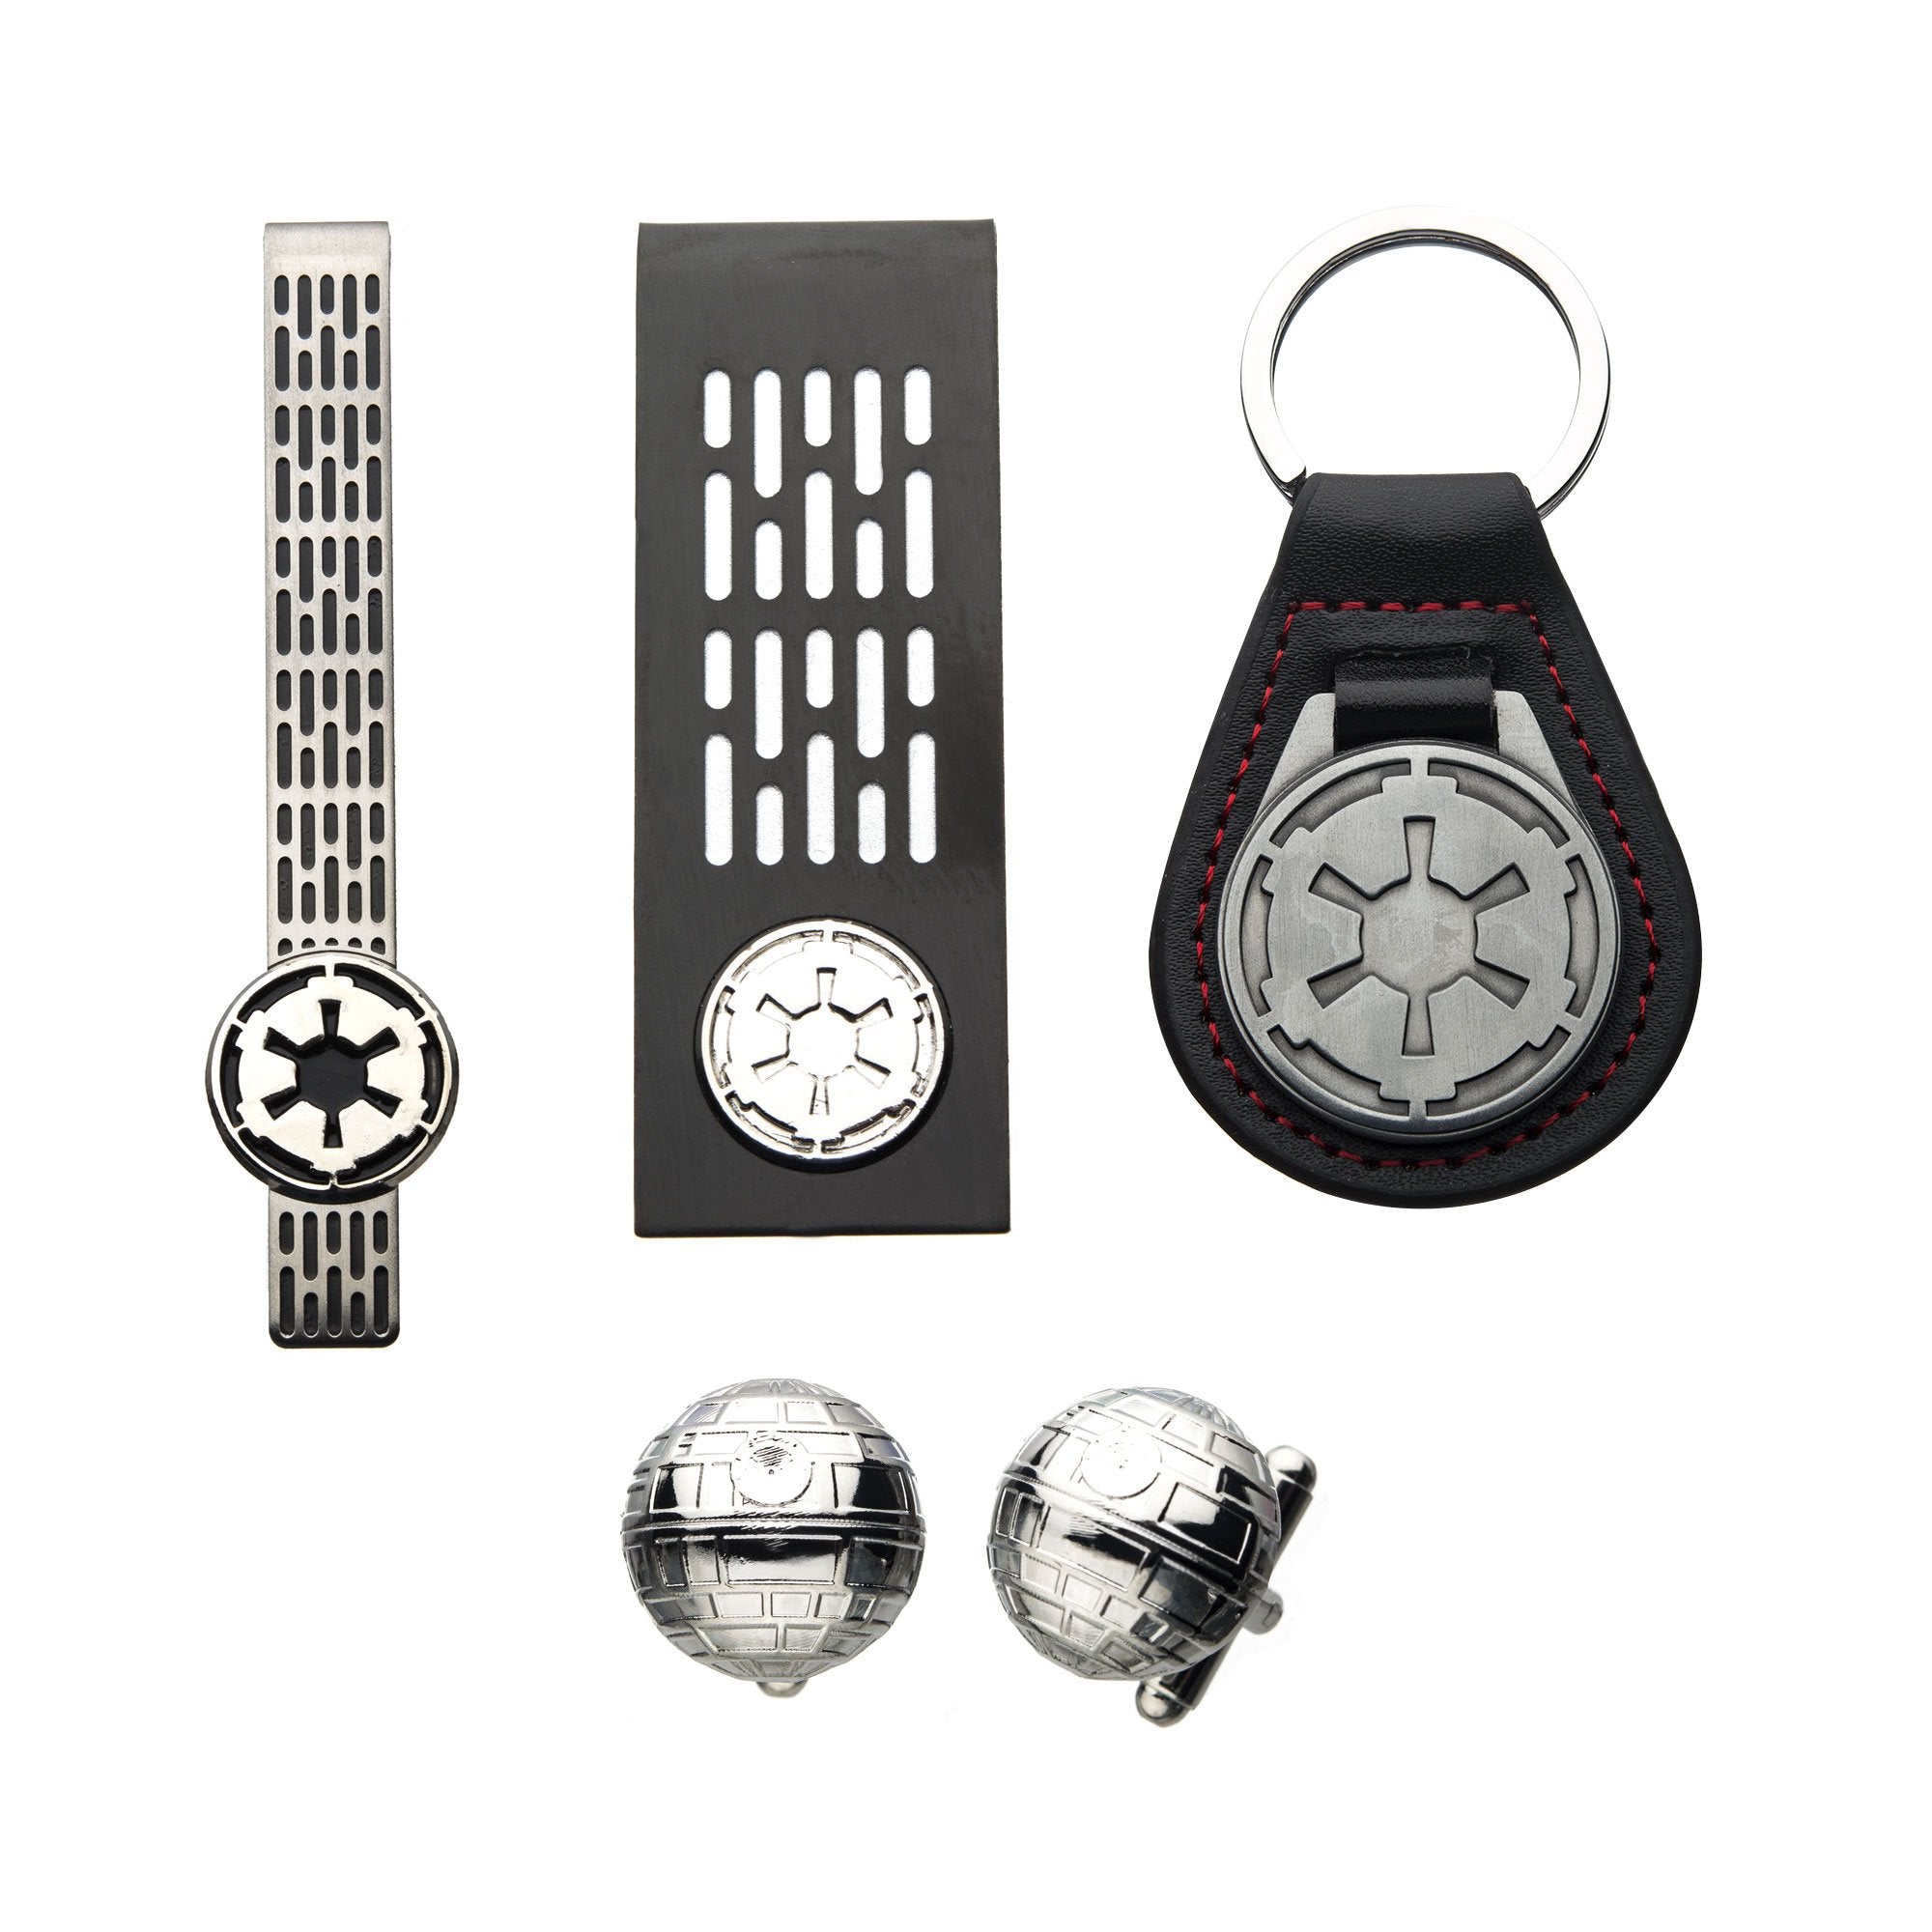 Star Wars Imperial Symbol Keychain, Money Clip, Tie Clip, Cufflinks Set